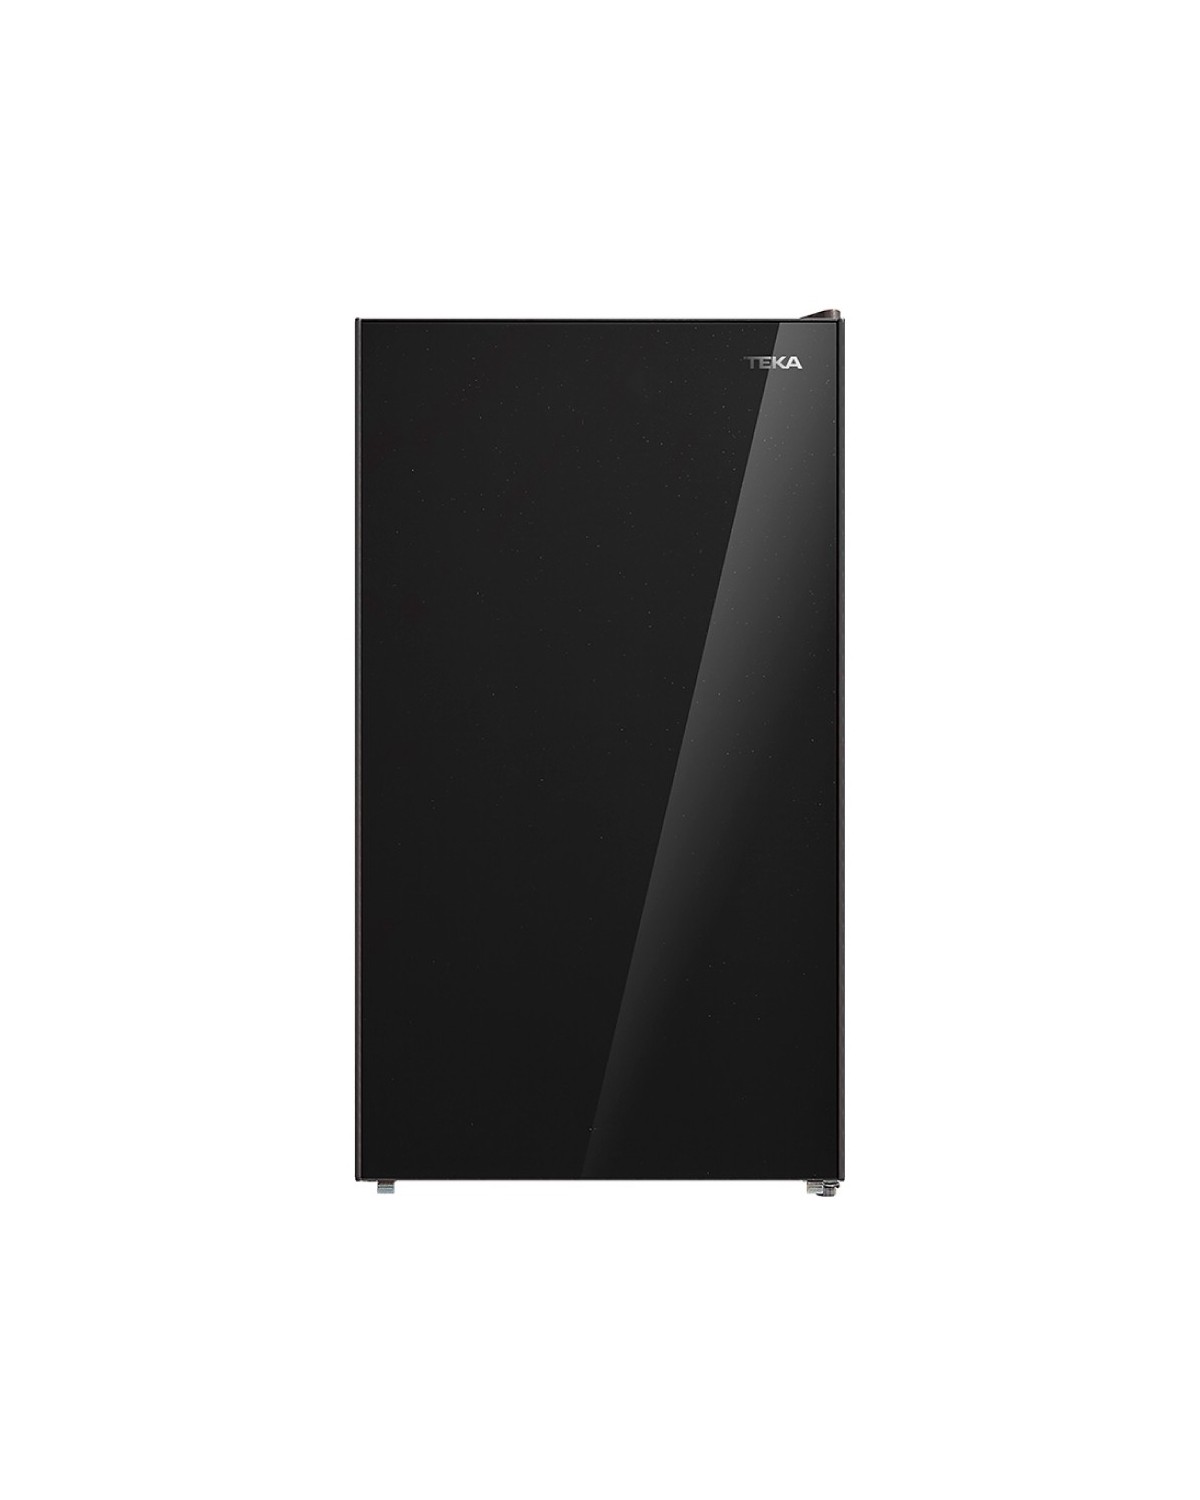 Refrigerador Frigobar Teka EASY RSR 10520 GBK REF.  113320001